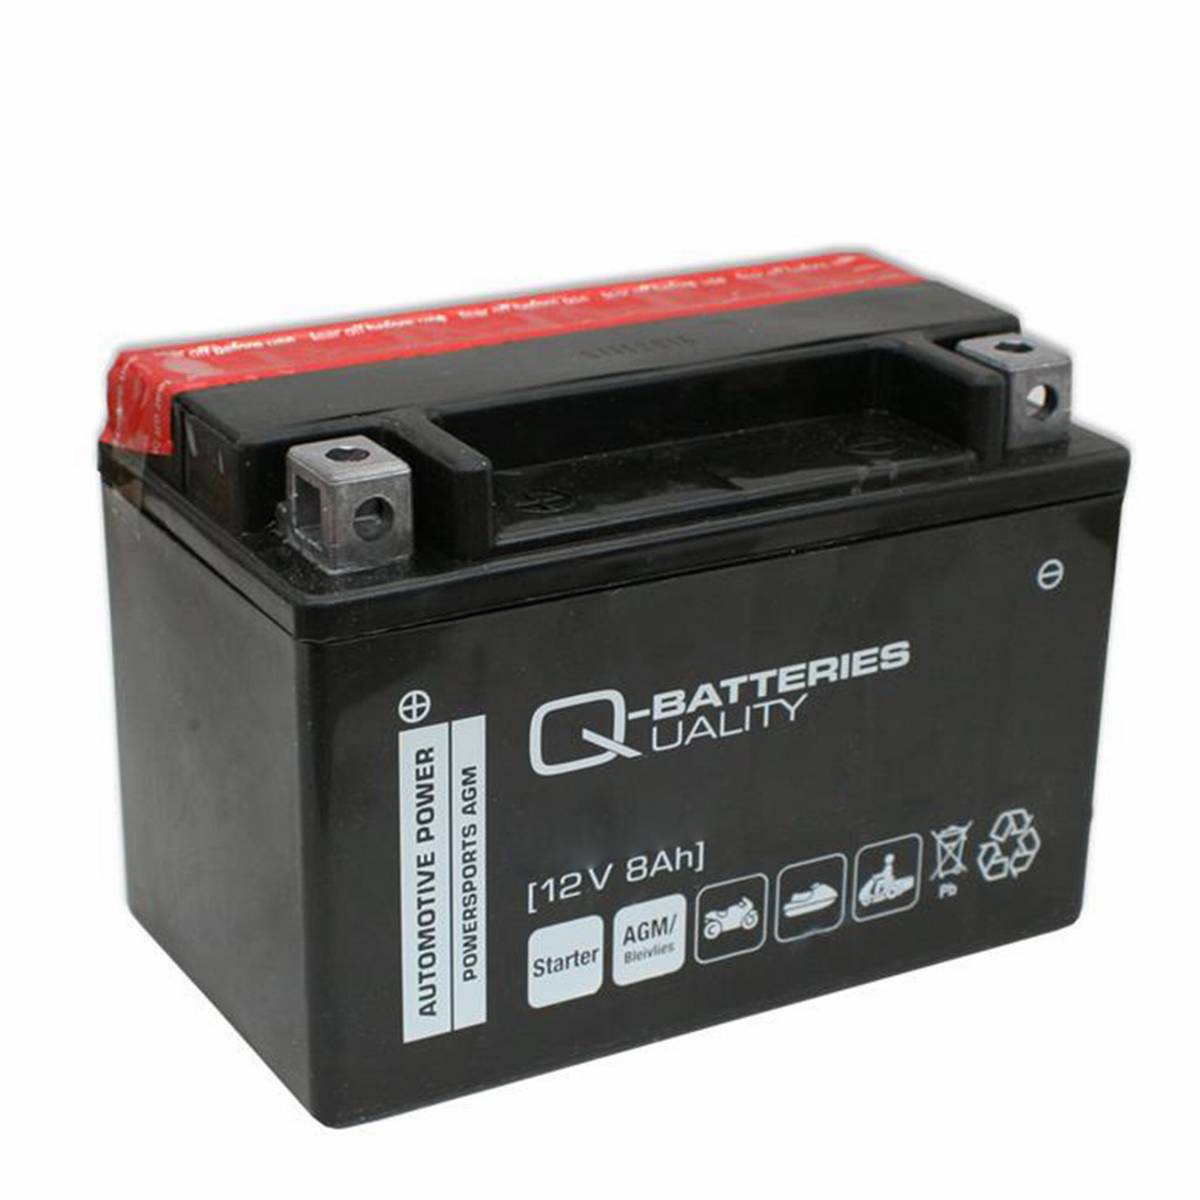 Q-Batteries Motorradbatterie 9-BS Gel 50812 12V 9Ah 145A